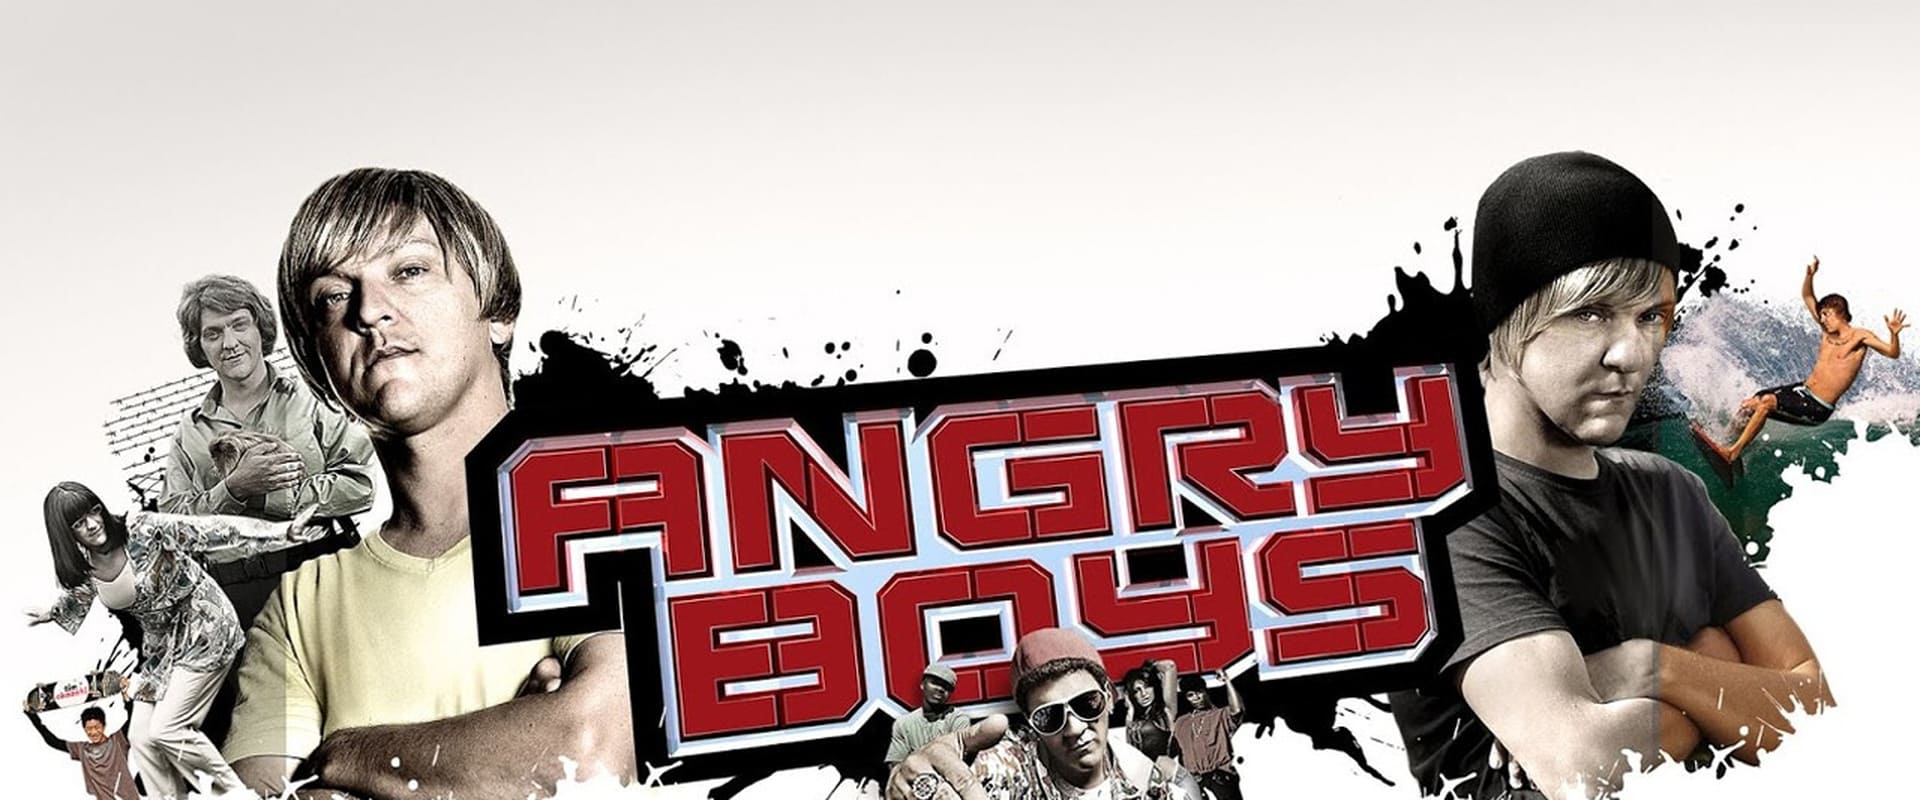 Angry Boys